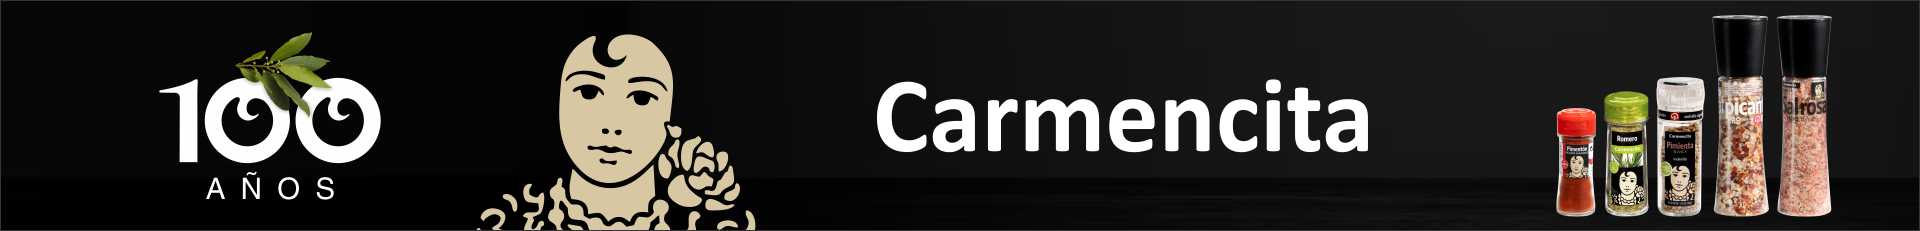 https://www.casarica.com.py/productos?q=carmencita&utm_source=Web&utm_medium=Banner_A1&utm_campaign=Carmencita&utm_id=Carmencita&utm_term=Posicion&utm_content=A1